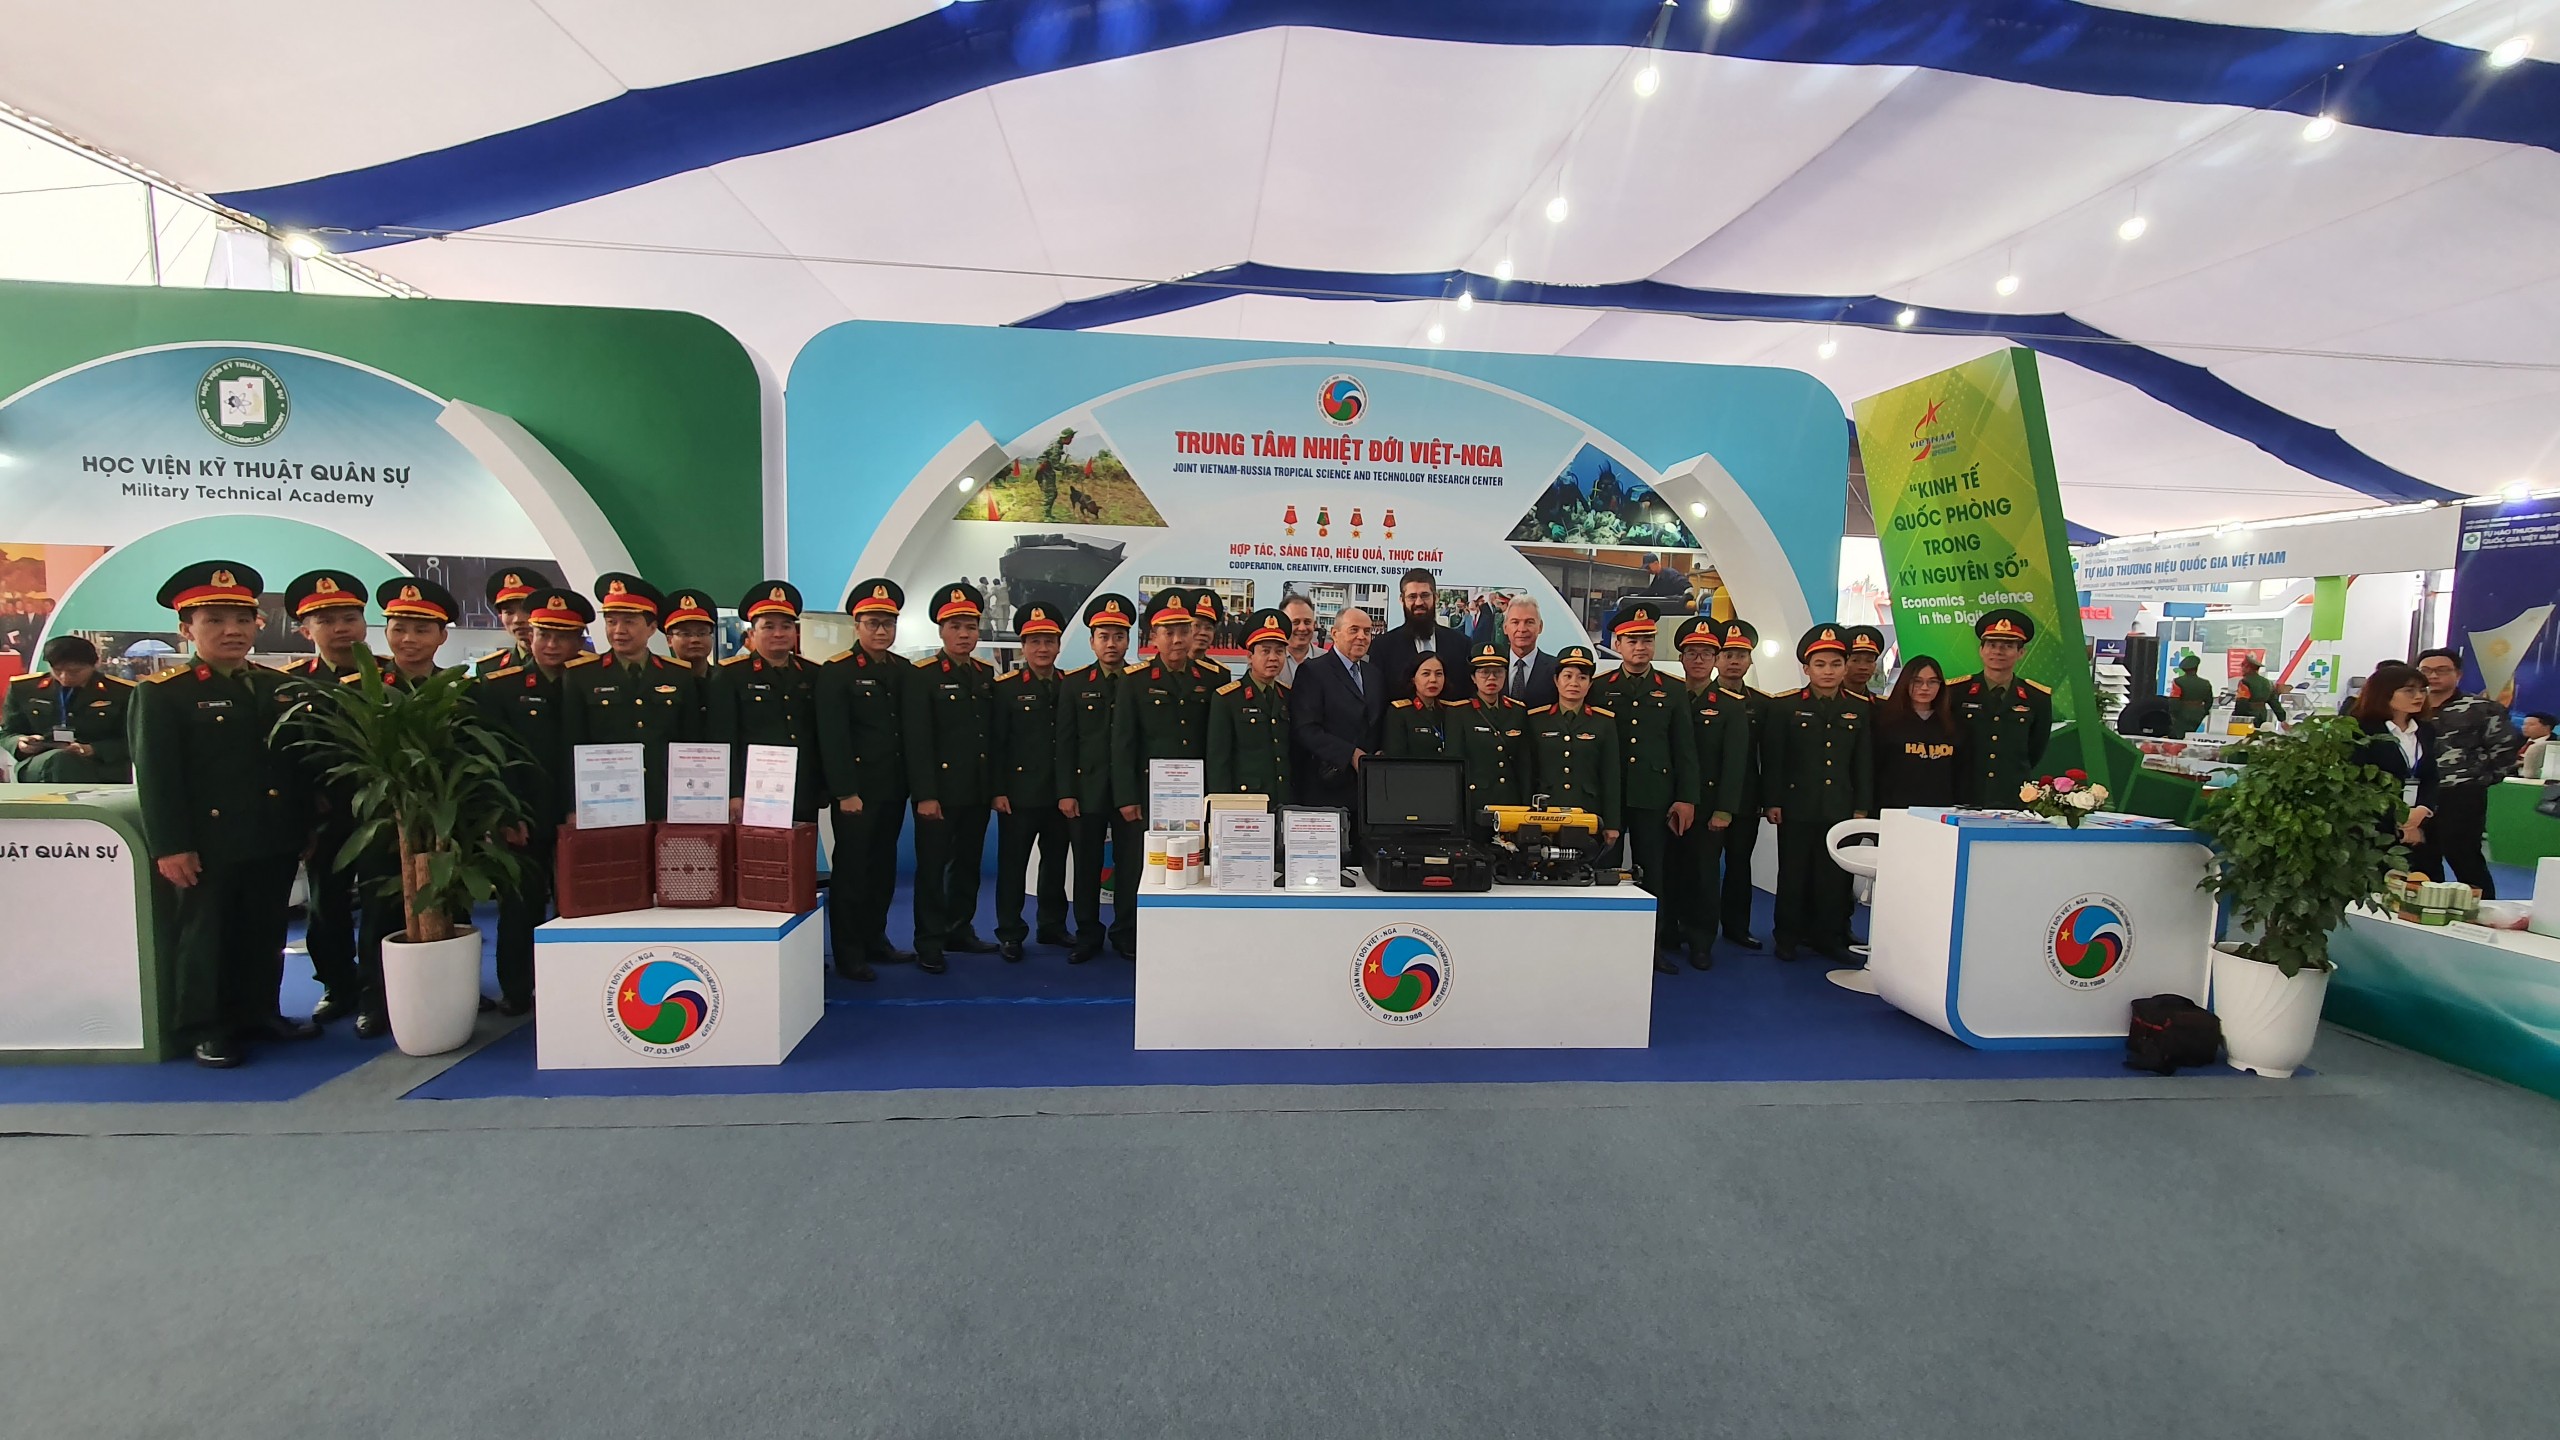 Triển lãm Quốc phòng quốc tế Việt Nam - cơ hội vàng để Trung tâm Nhiệt đới Việt - Nga quảng bá, mở rộng hợp tác về KH&CN với các đối tác trong và ngoài nước.